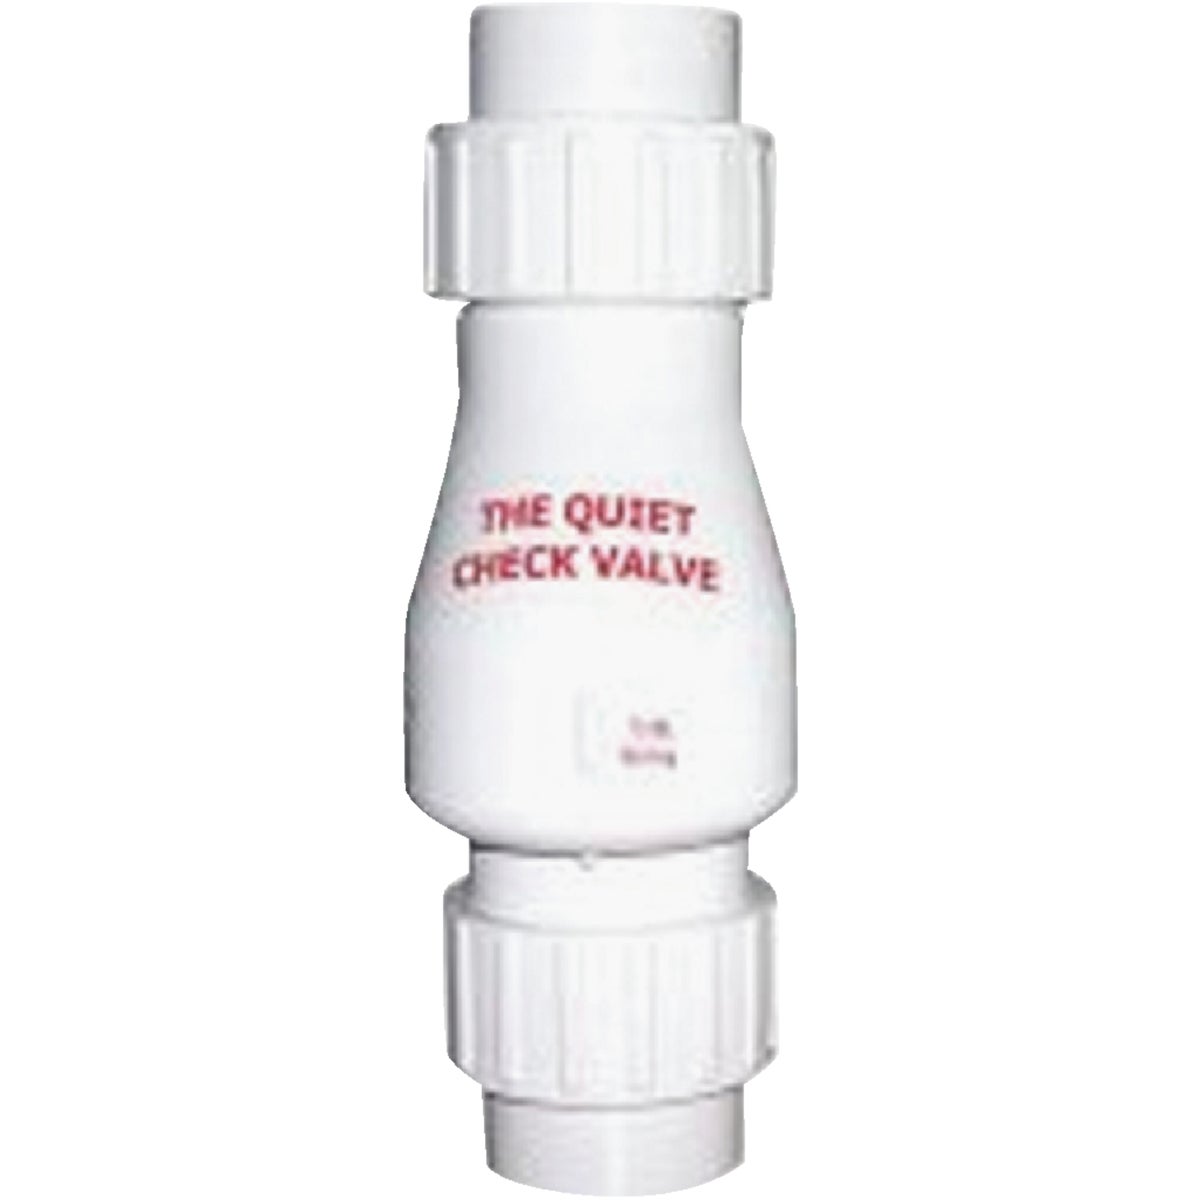 Item 401192, White quiet check valve.